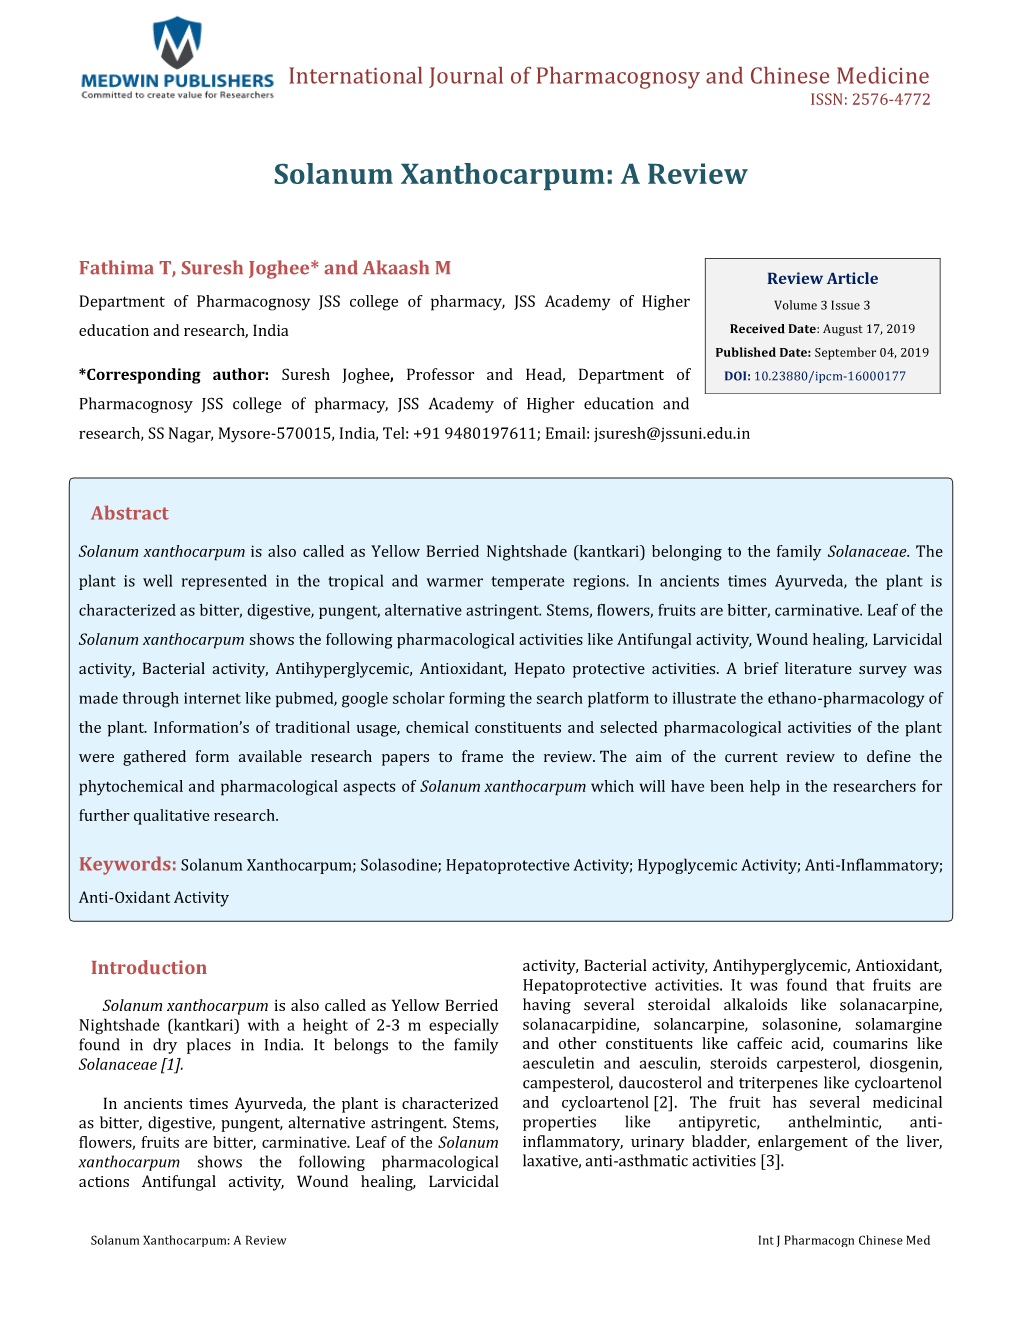 Suresh Joghee, Et Al. Solanum Xanthocarpum: a Review. Int J Pharmacogn Chinese Med 2019, 3(3): 000177